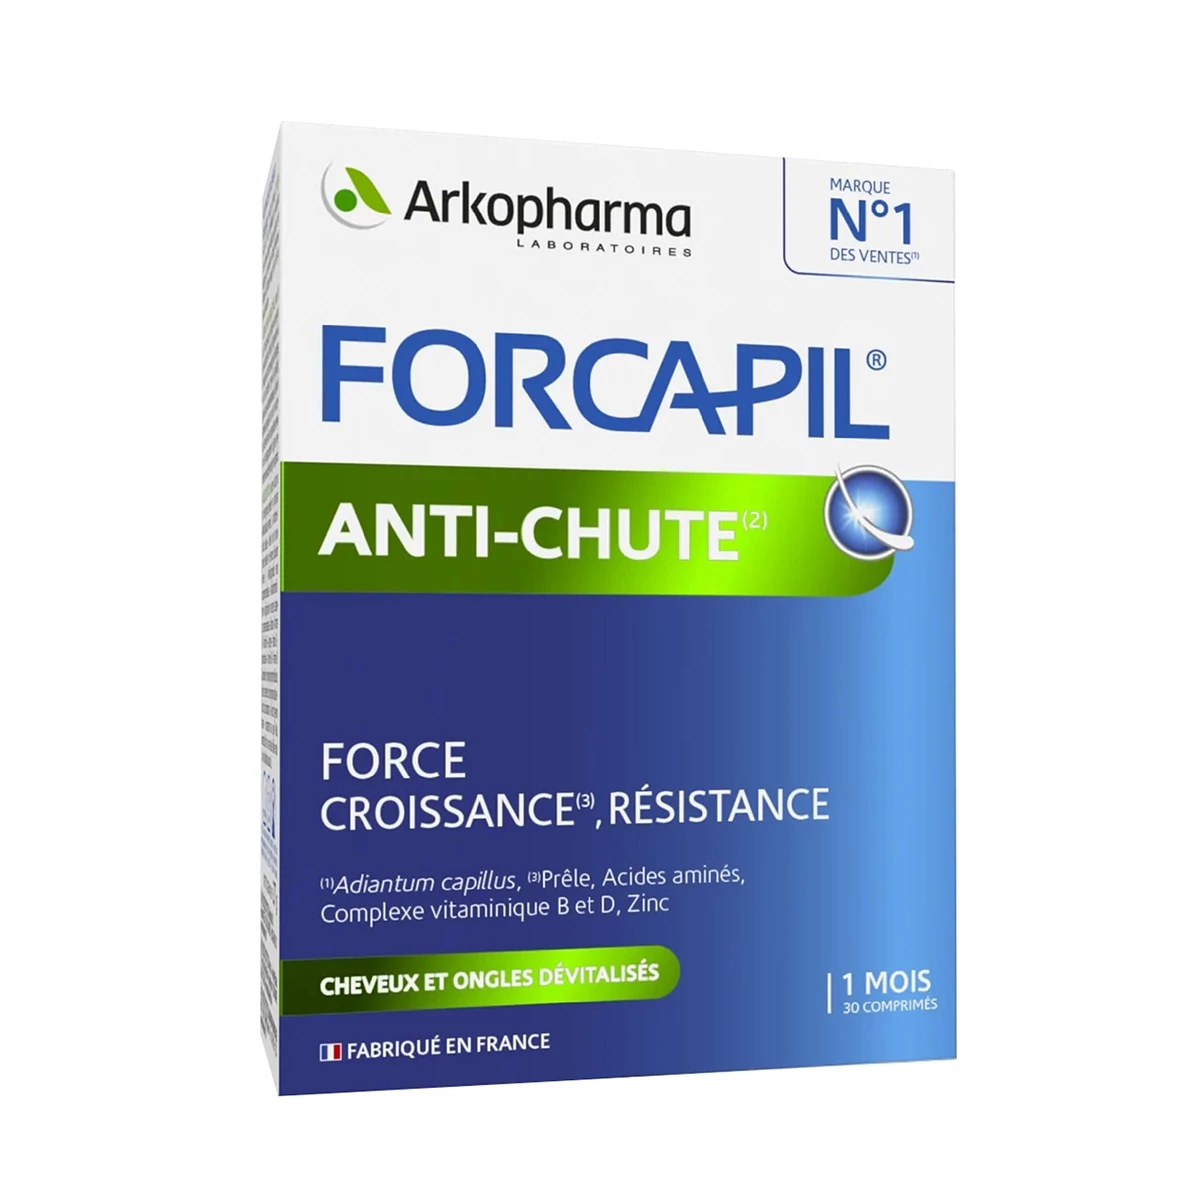 Arkopharma Forcapil Anti Chute - Hỗ trợ giảm rụng tóc do nội tiết